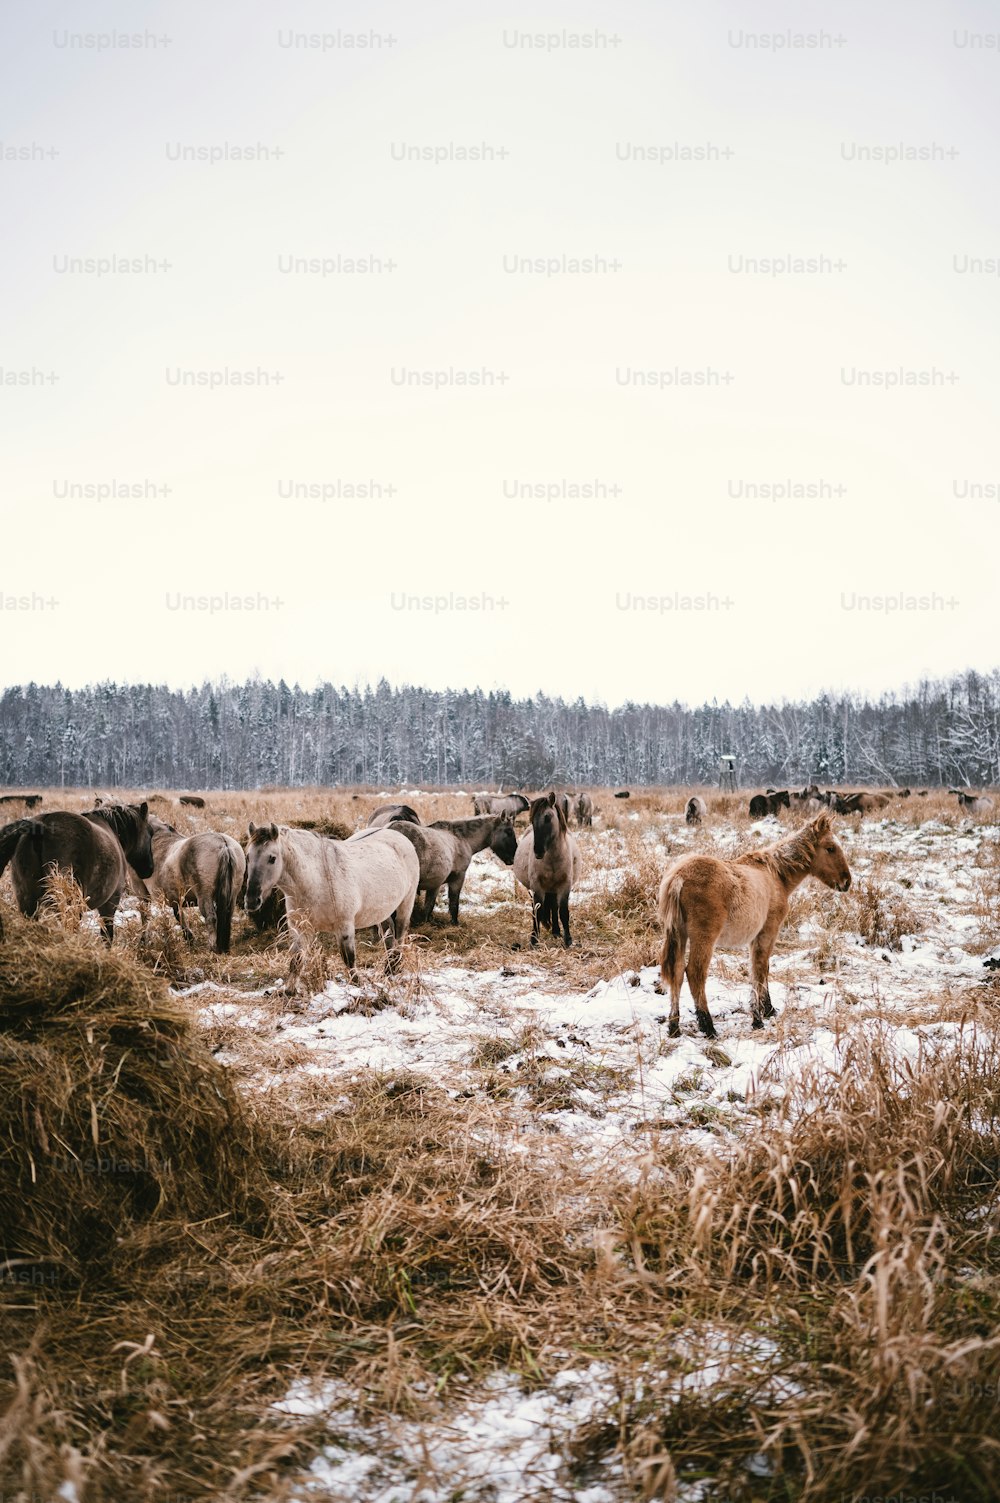 Eine Gruppe von Pferden, die auf einem verschneiten Feld spazieren gehen